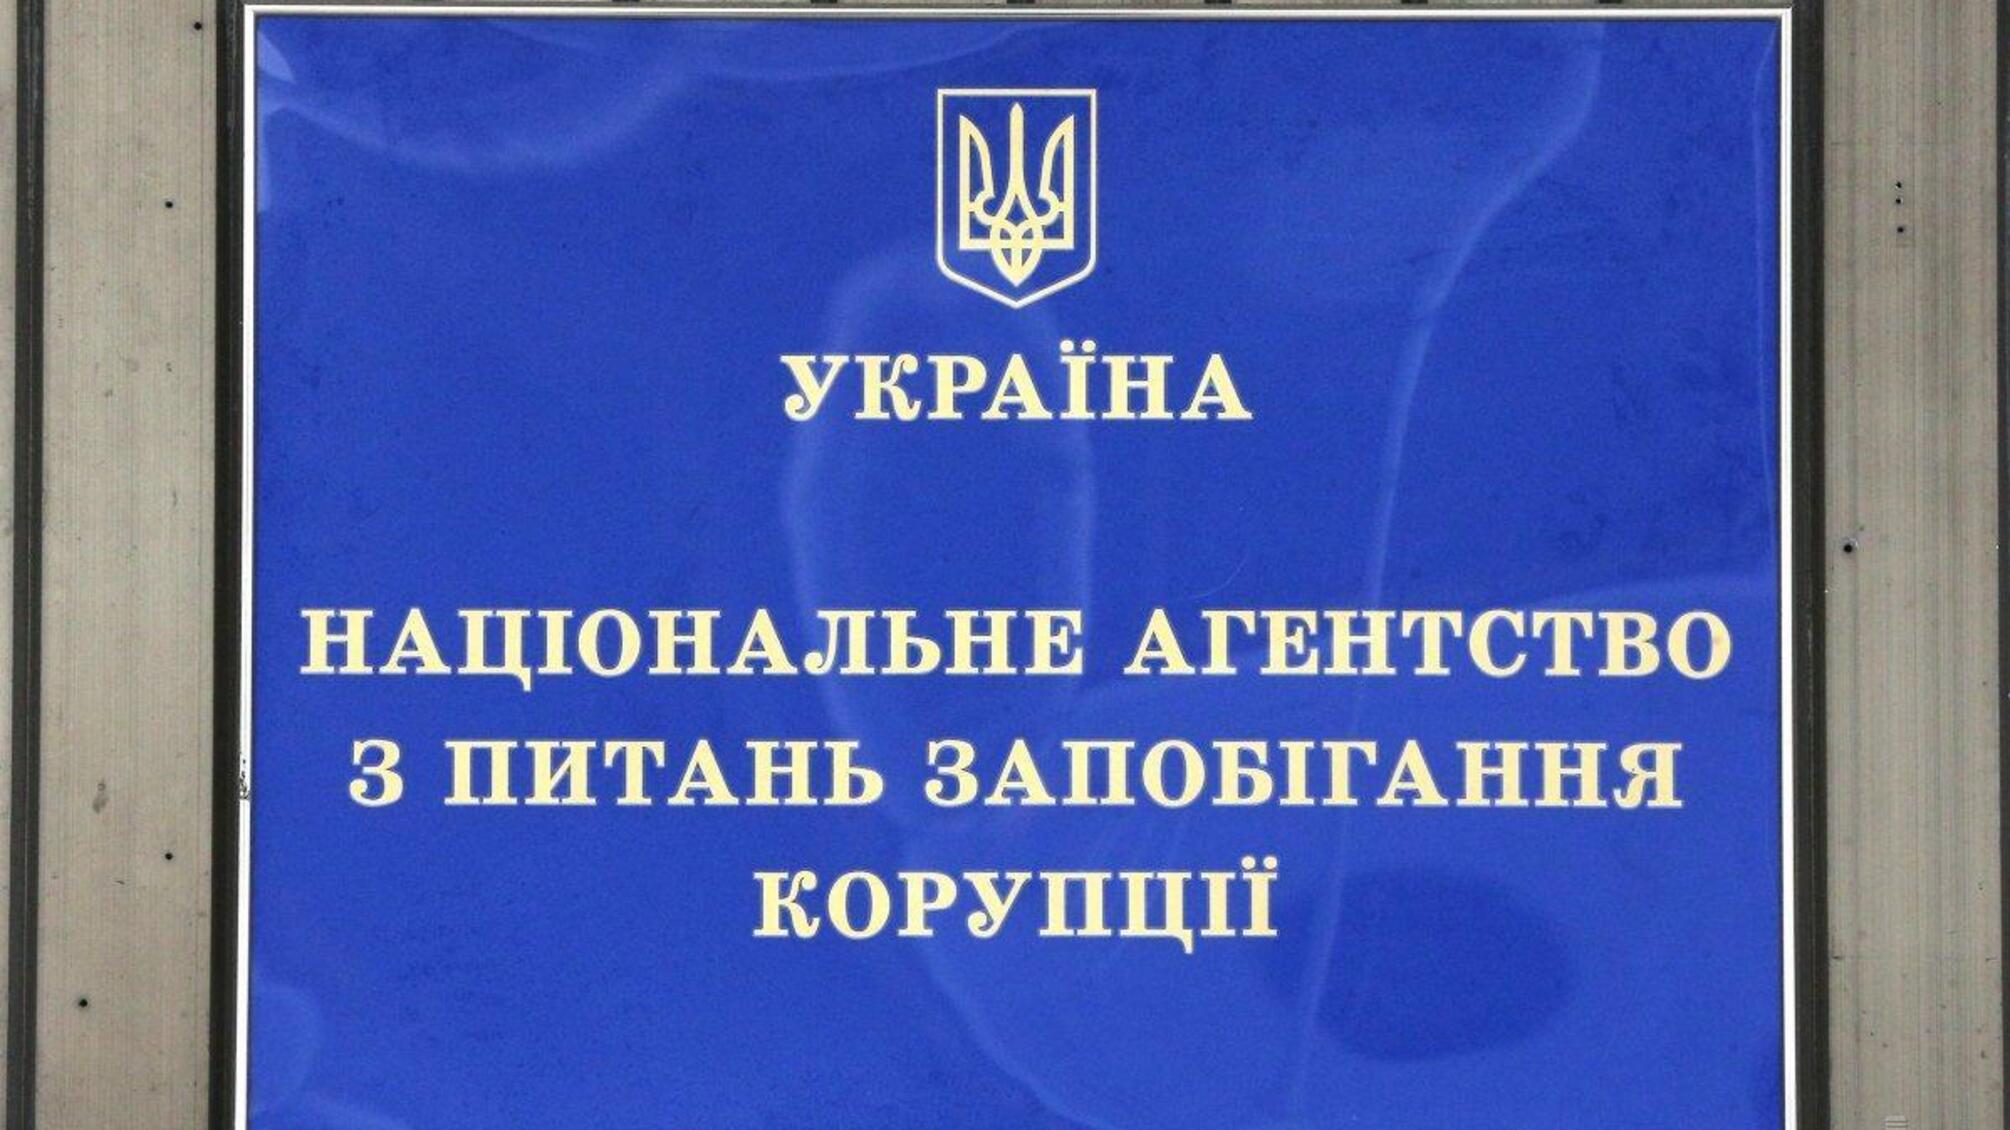 НАПК выявило почти 3 млн грн, которыми незаконно финансировали партию 'Слуга народа' - детали